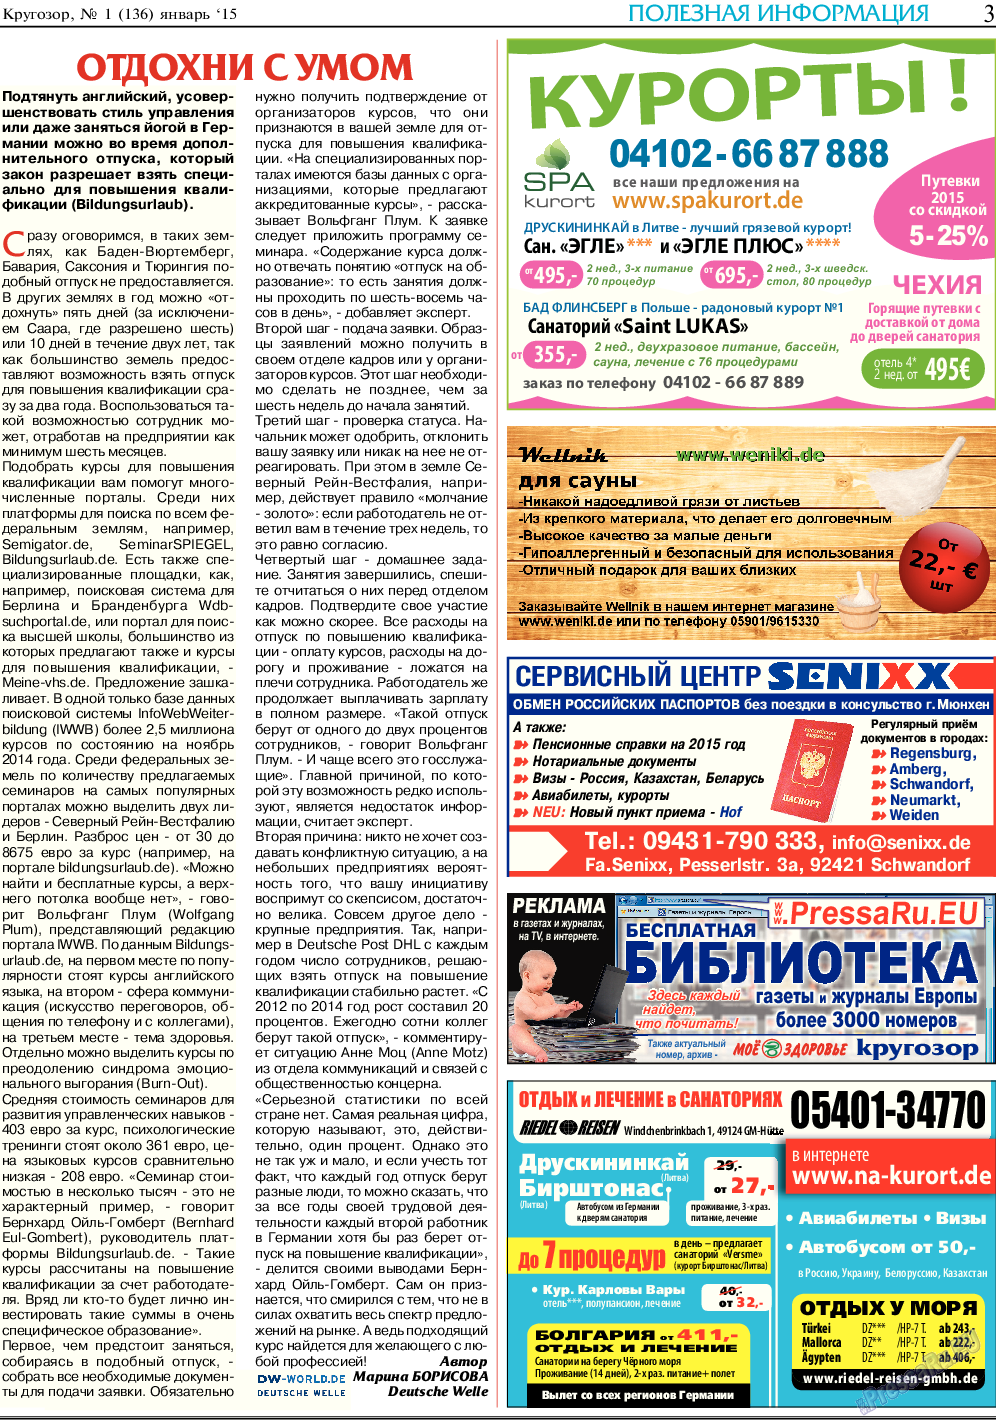 Кругозор, газета. 2015 №1 стр.3